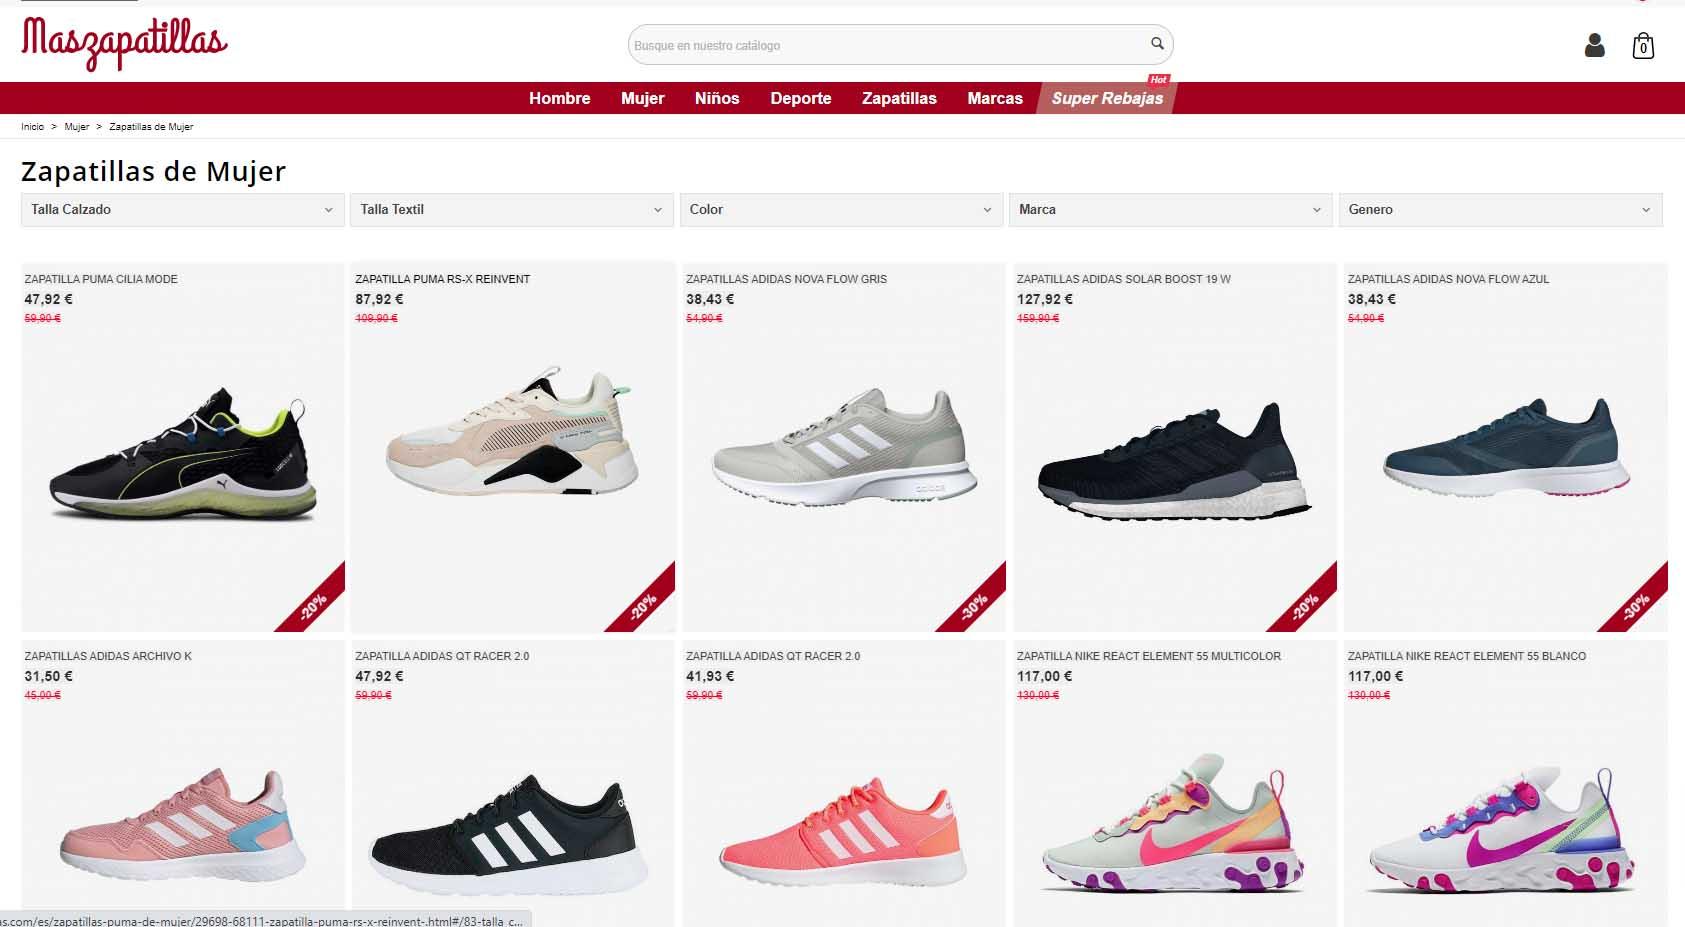 paginas web de zapatillas deportivas